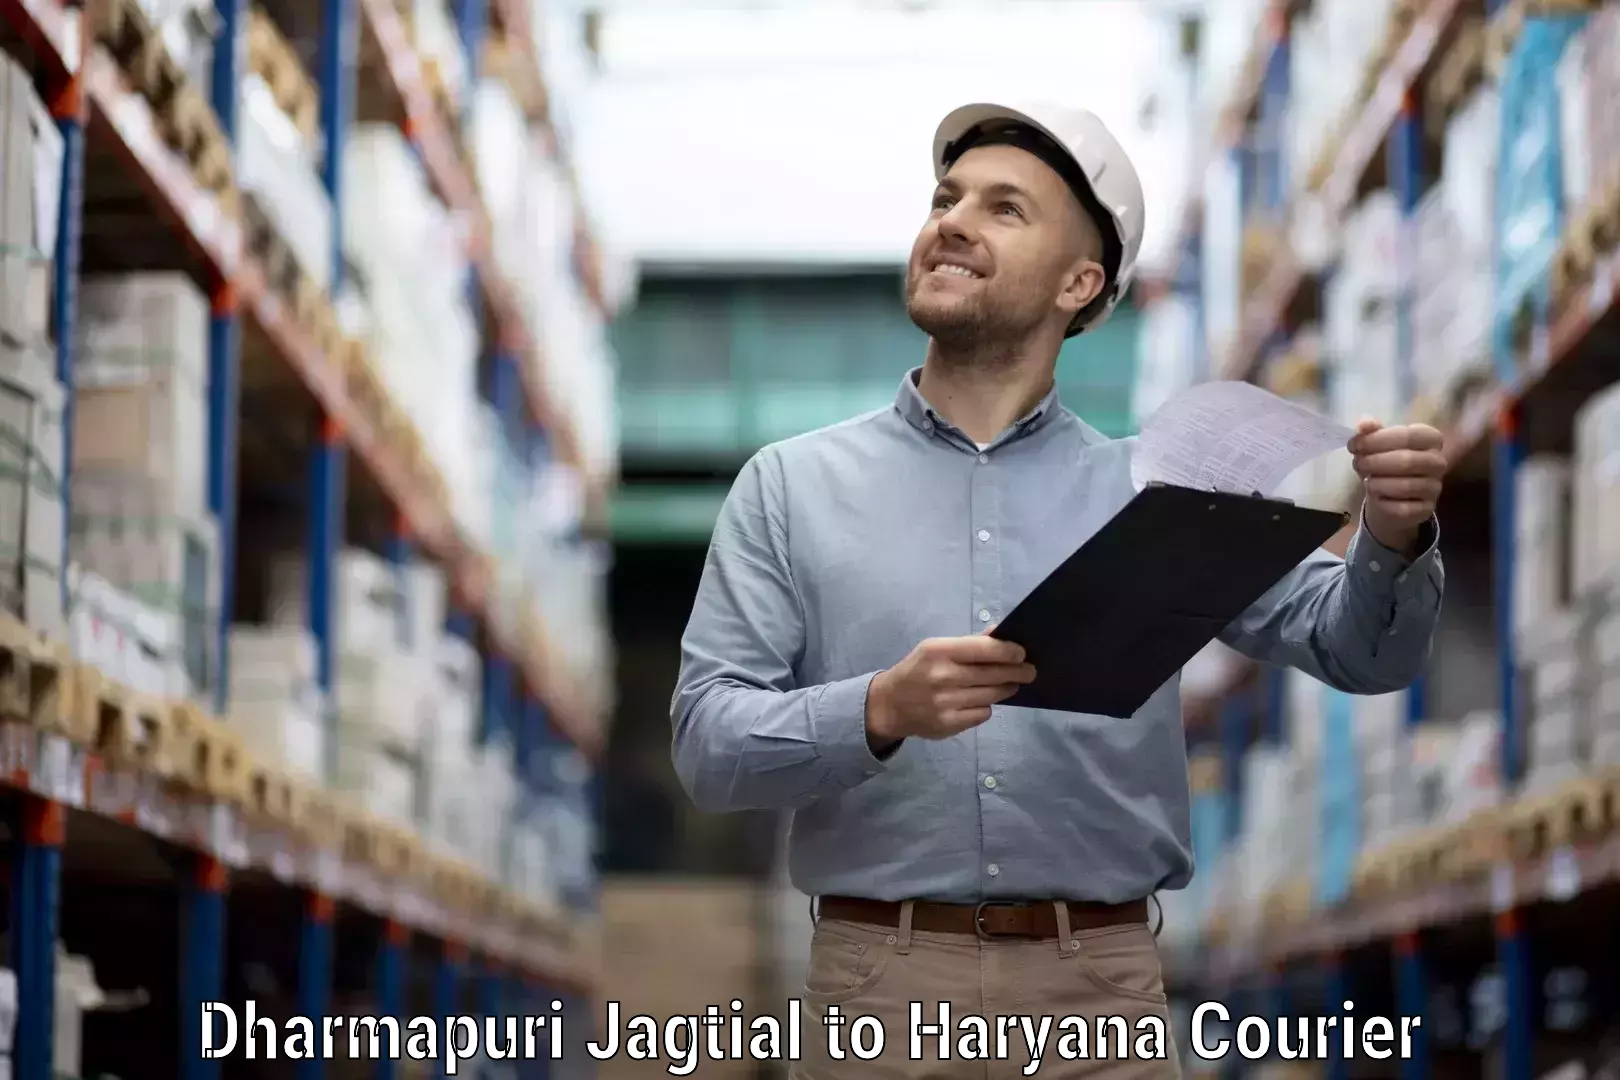 Efficient parcel service Dharmapuri Jagtial to Bahadurgarh